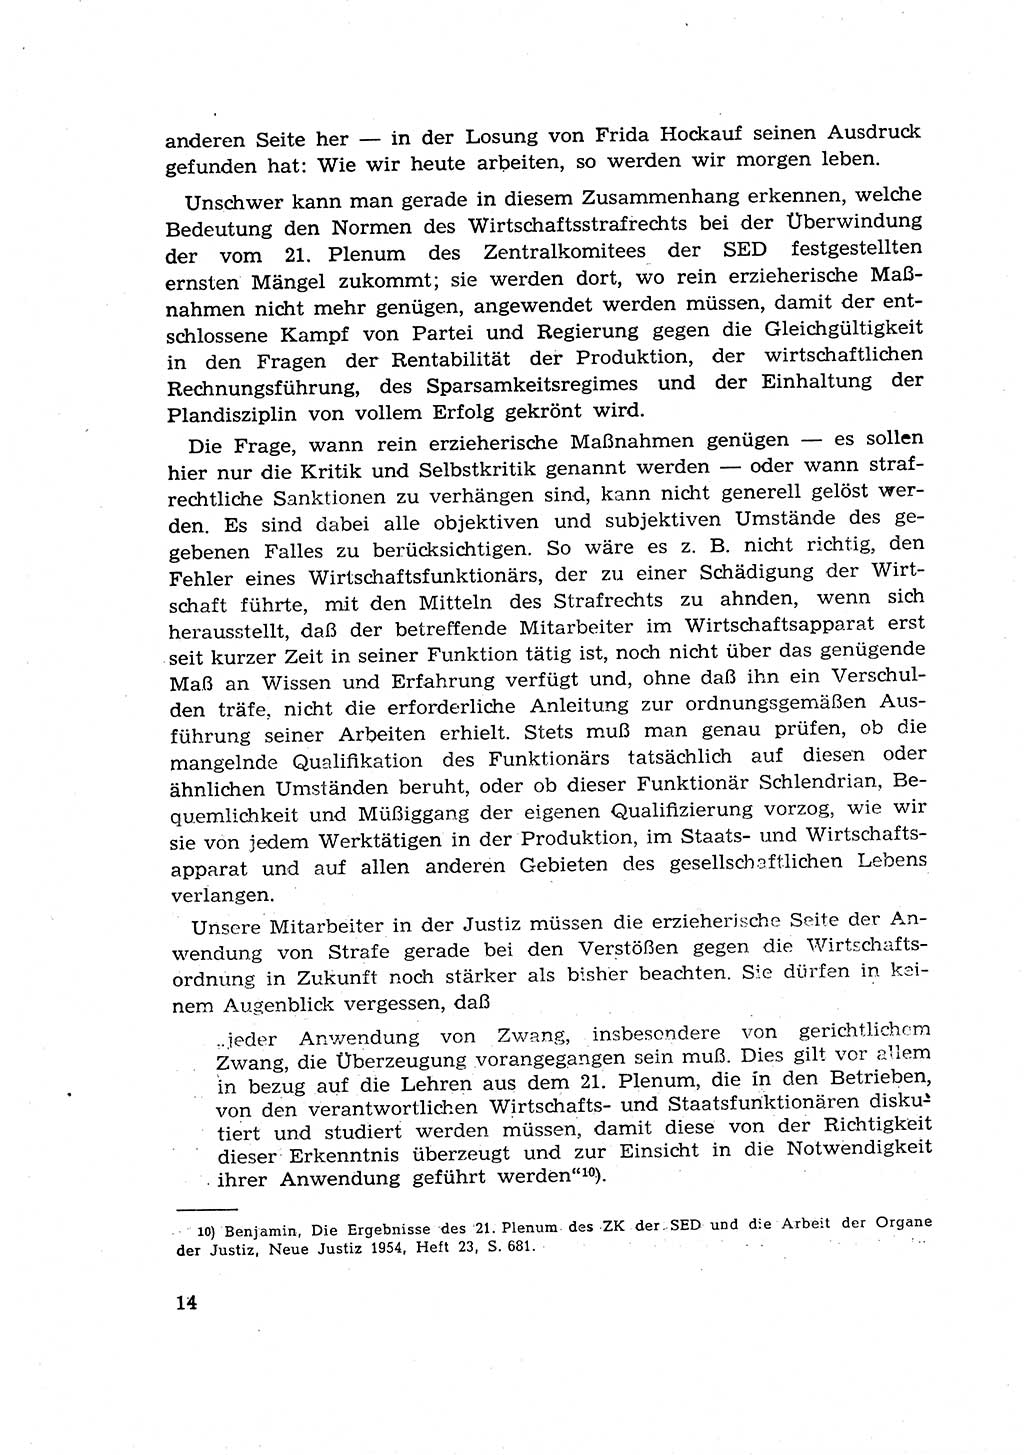 Materialien zum Strafrecht, Besonderer Teil [Deutsche Demokratische Republik (DDR)] 1955, Seite 14 (Mat. Strafr. BT DDR 1955, S. 14)